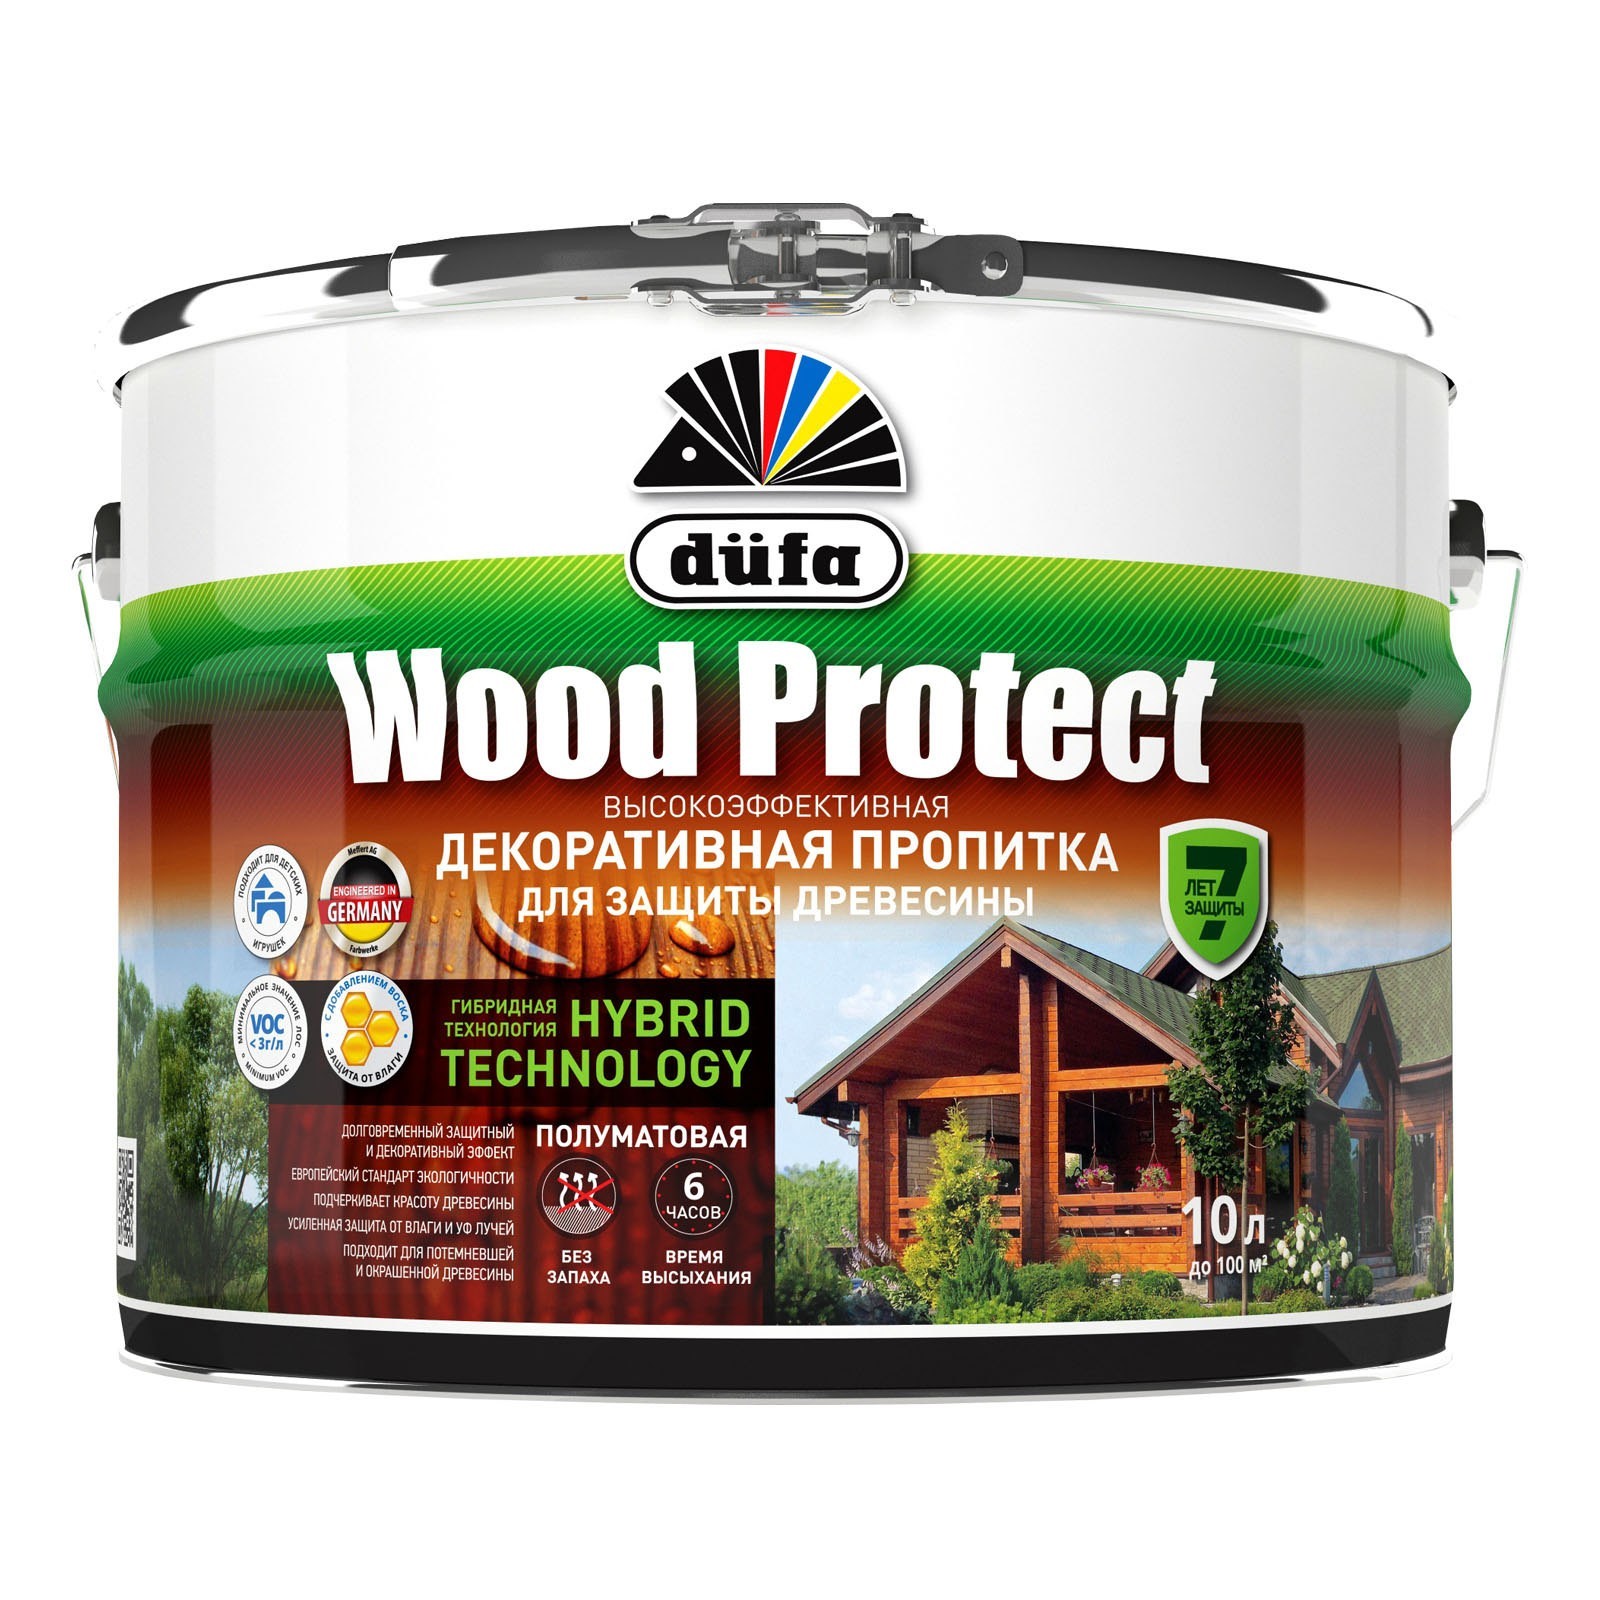 Пропитка декоративная для защиты древесины Орех 10л Dufa Wood Protect